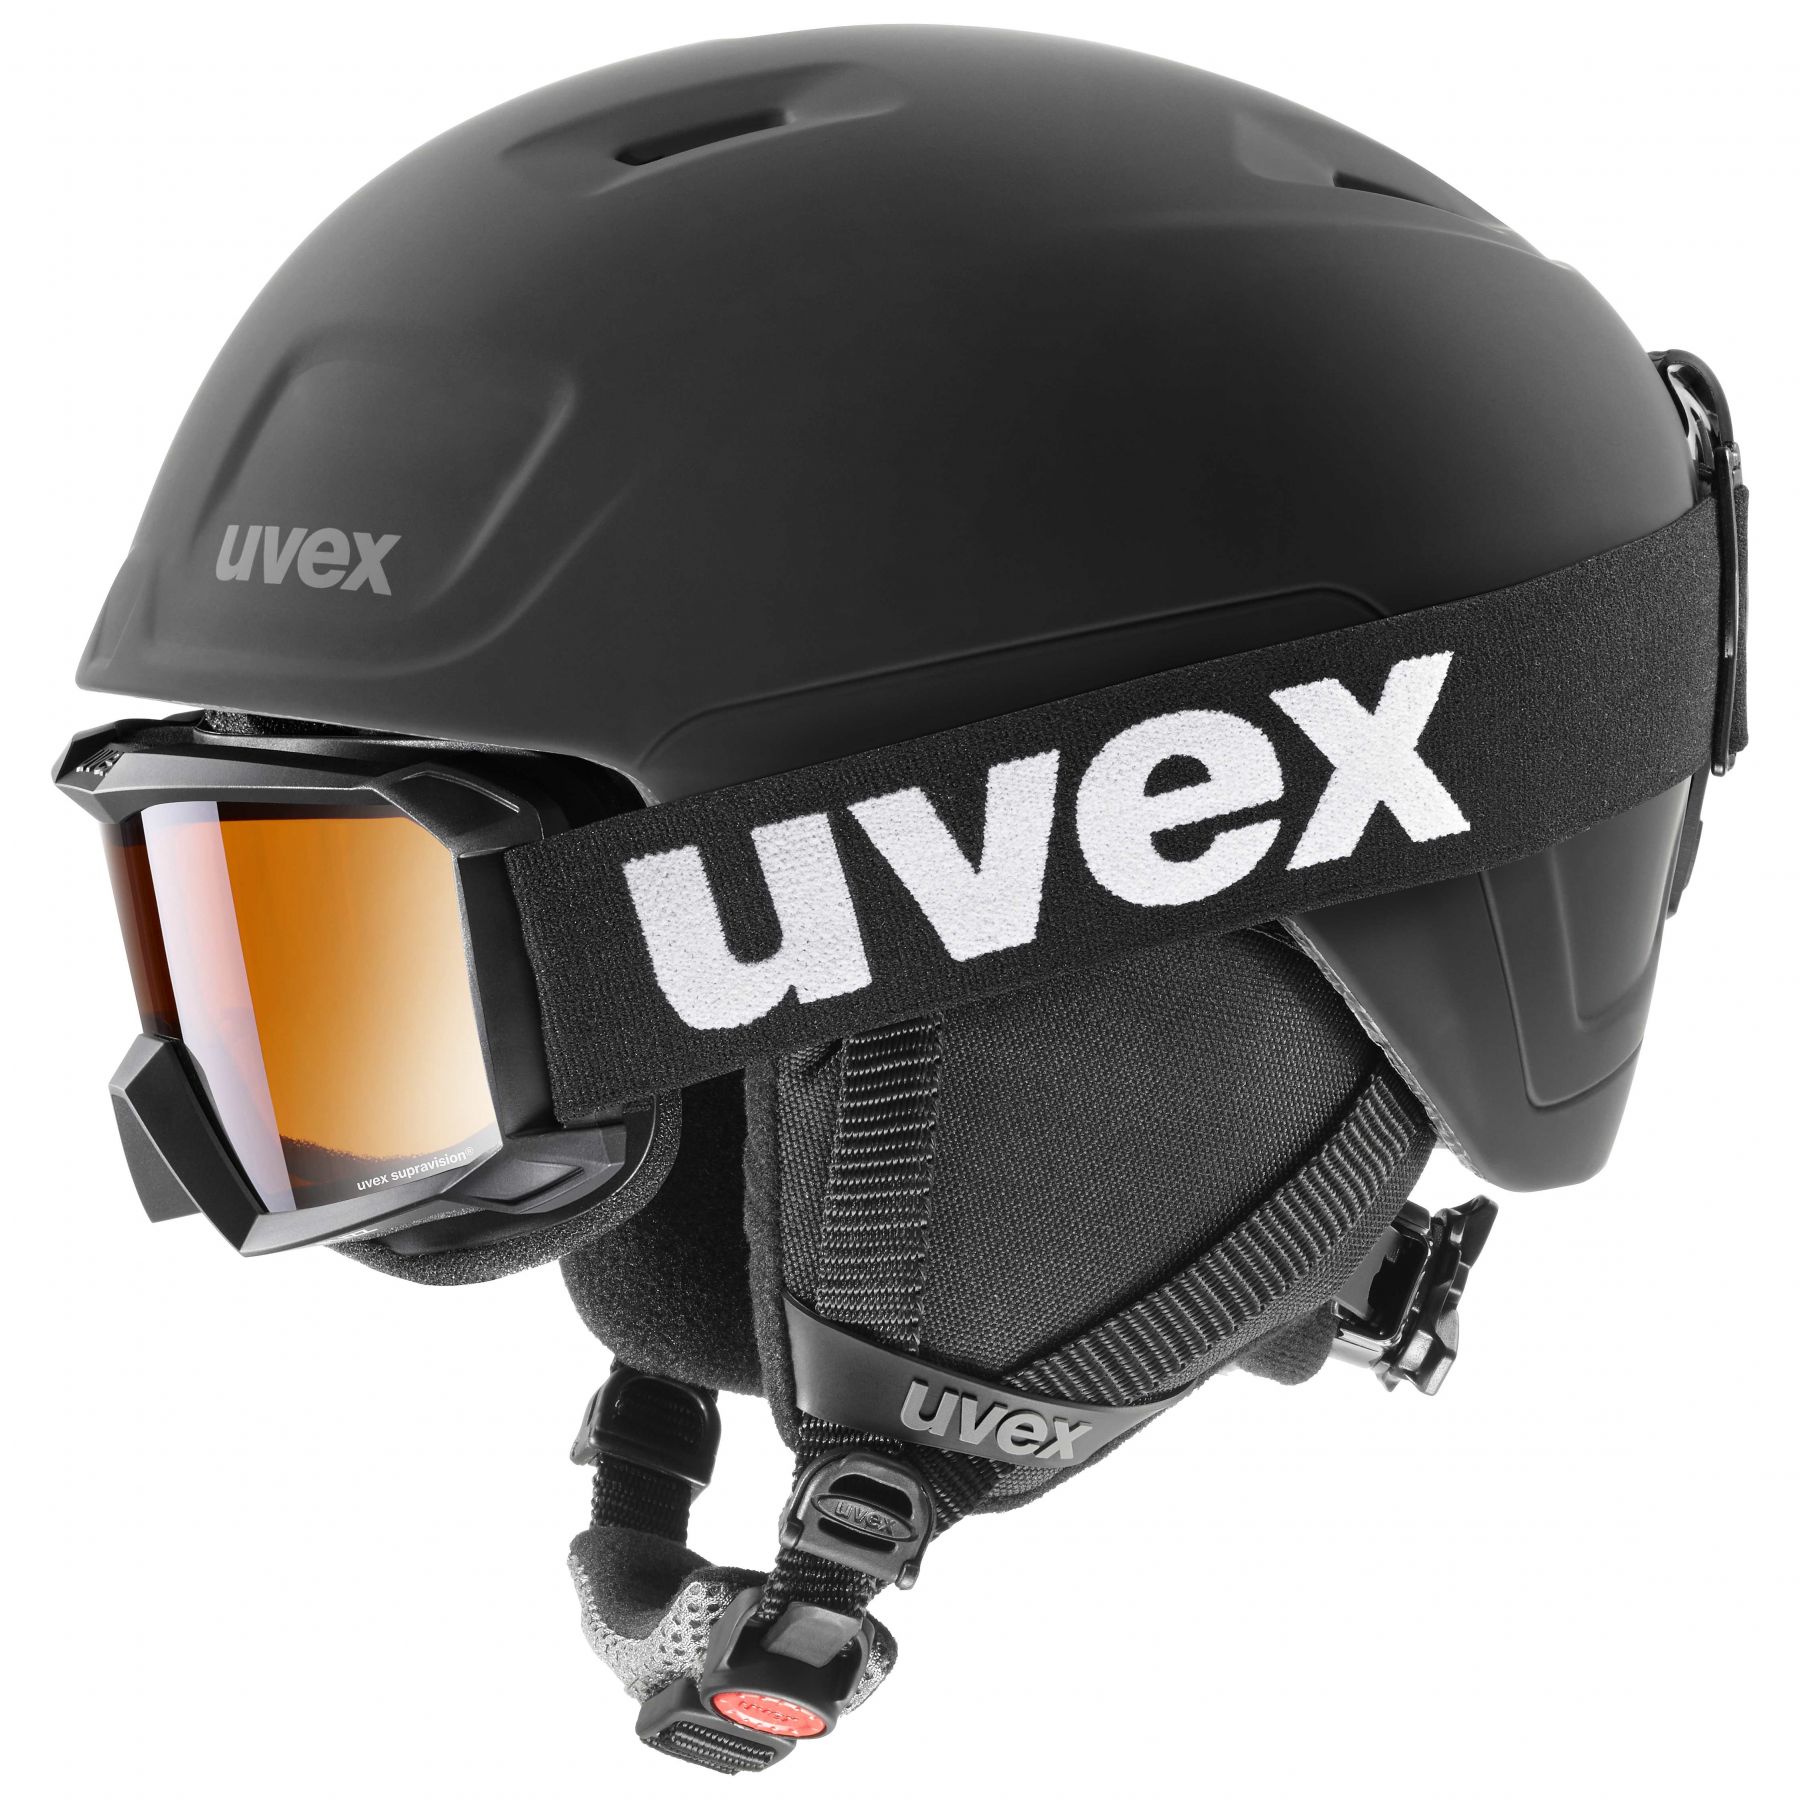 Billede af Uvex Heyya Pro Set, skihjelm + skibrille, junior, sort